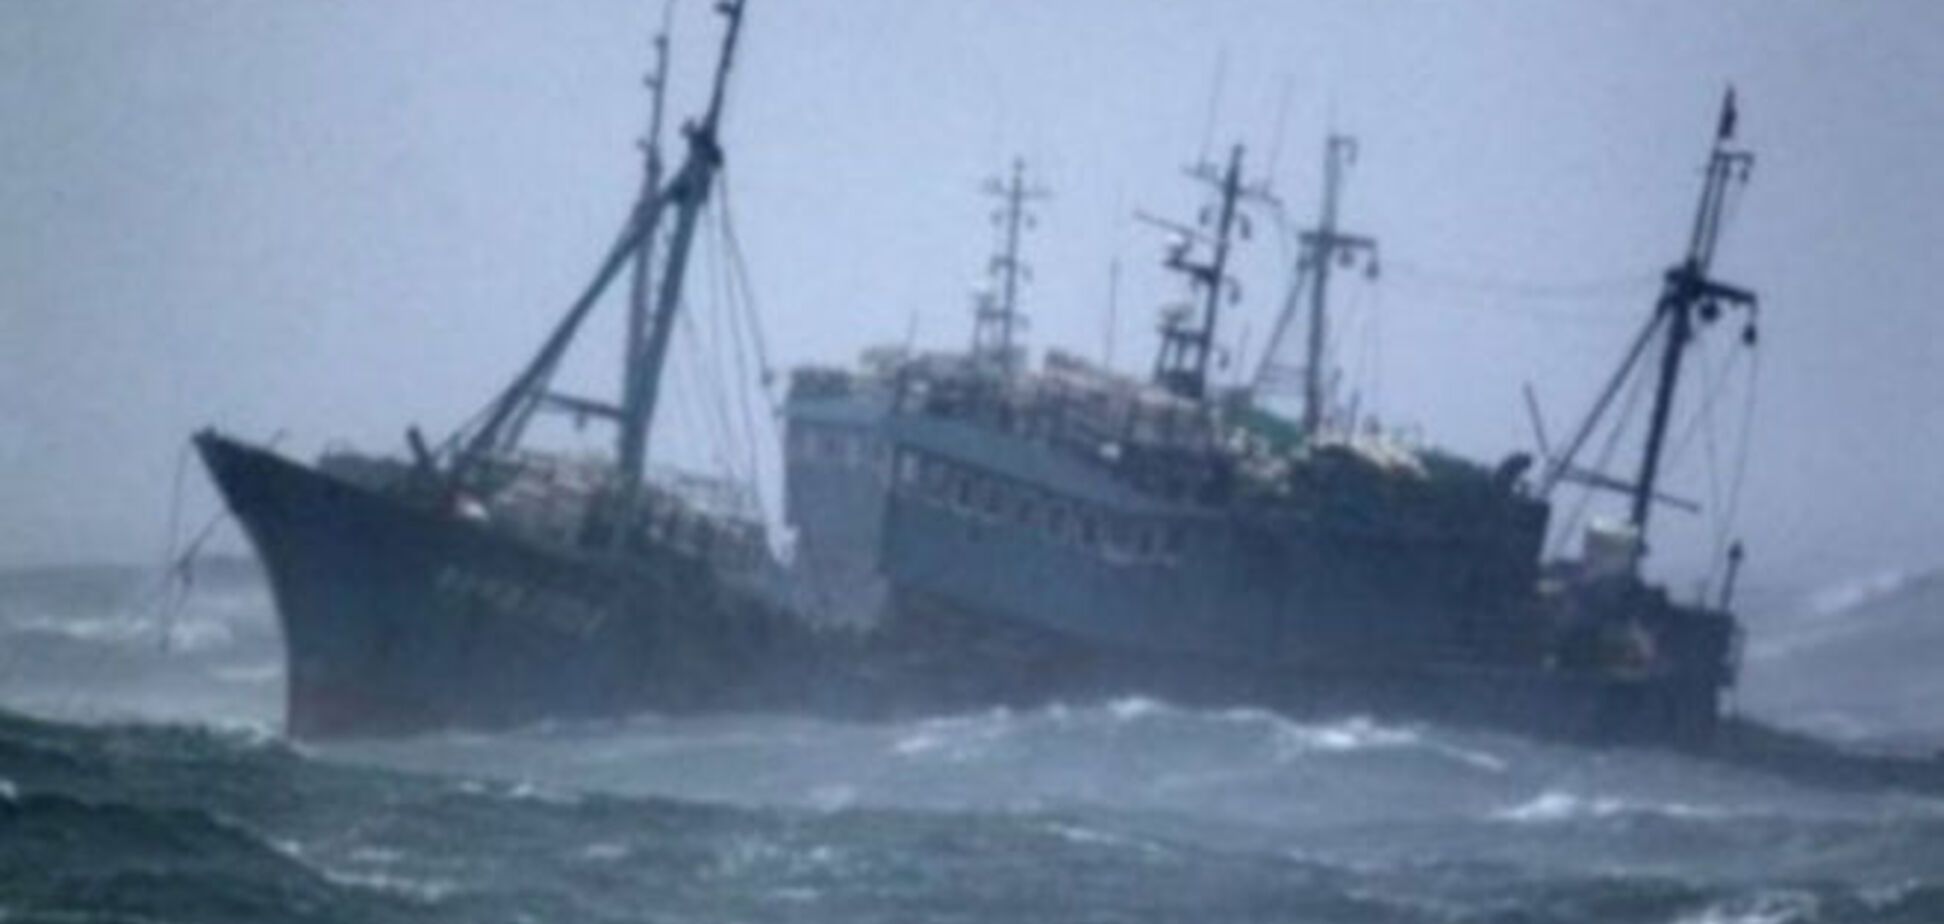 Спасенные с затонувшего траулера 'Дальний восток' моряки рассказали, что произошло: версии трагедии